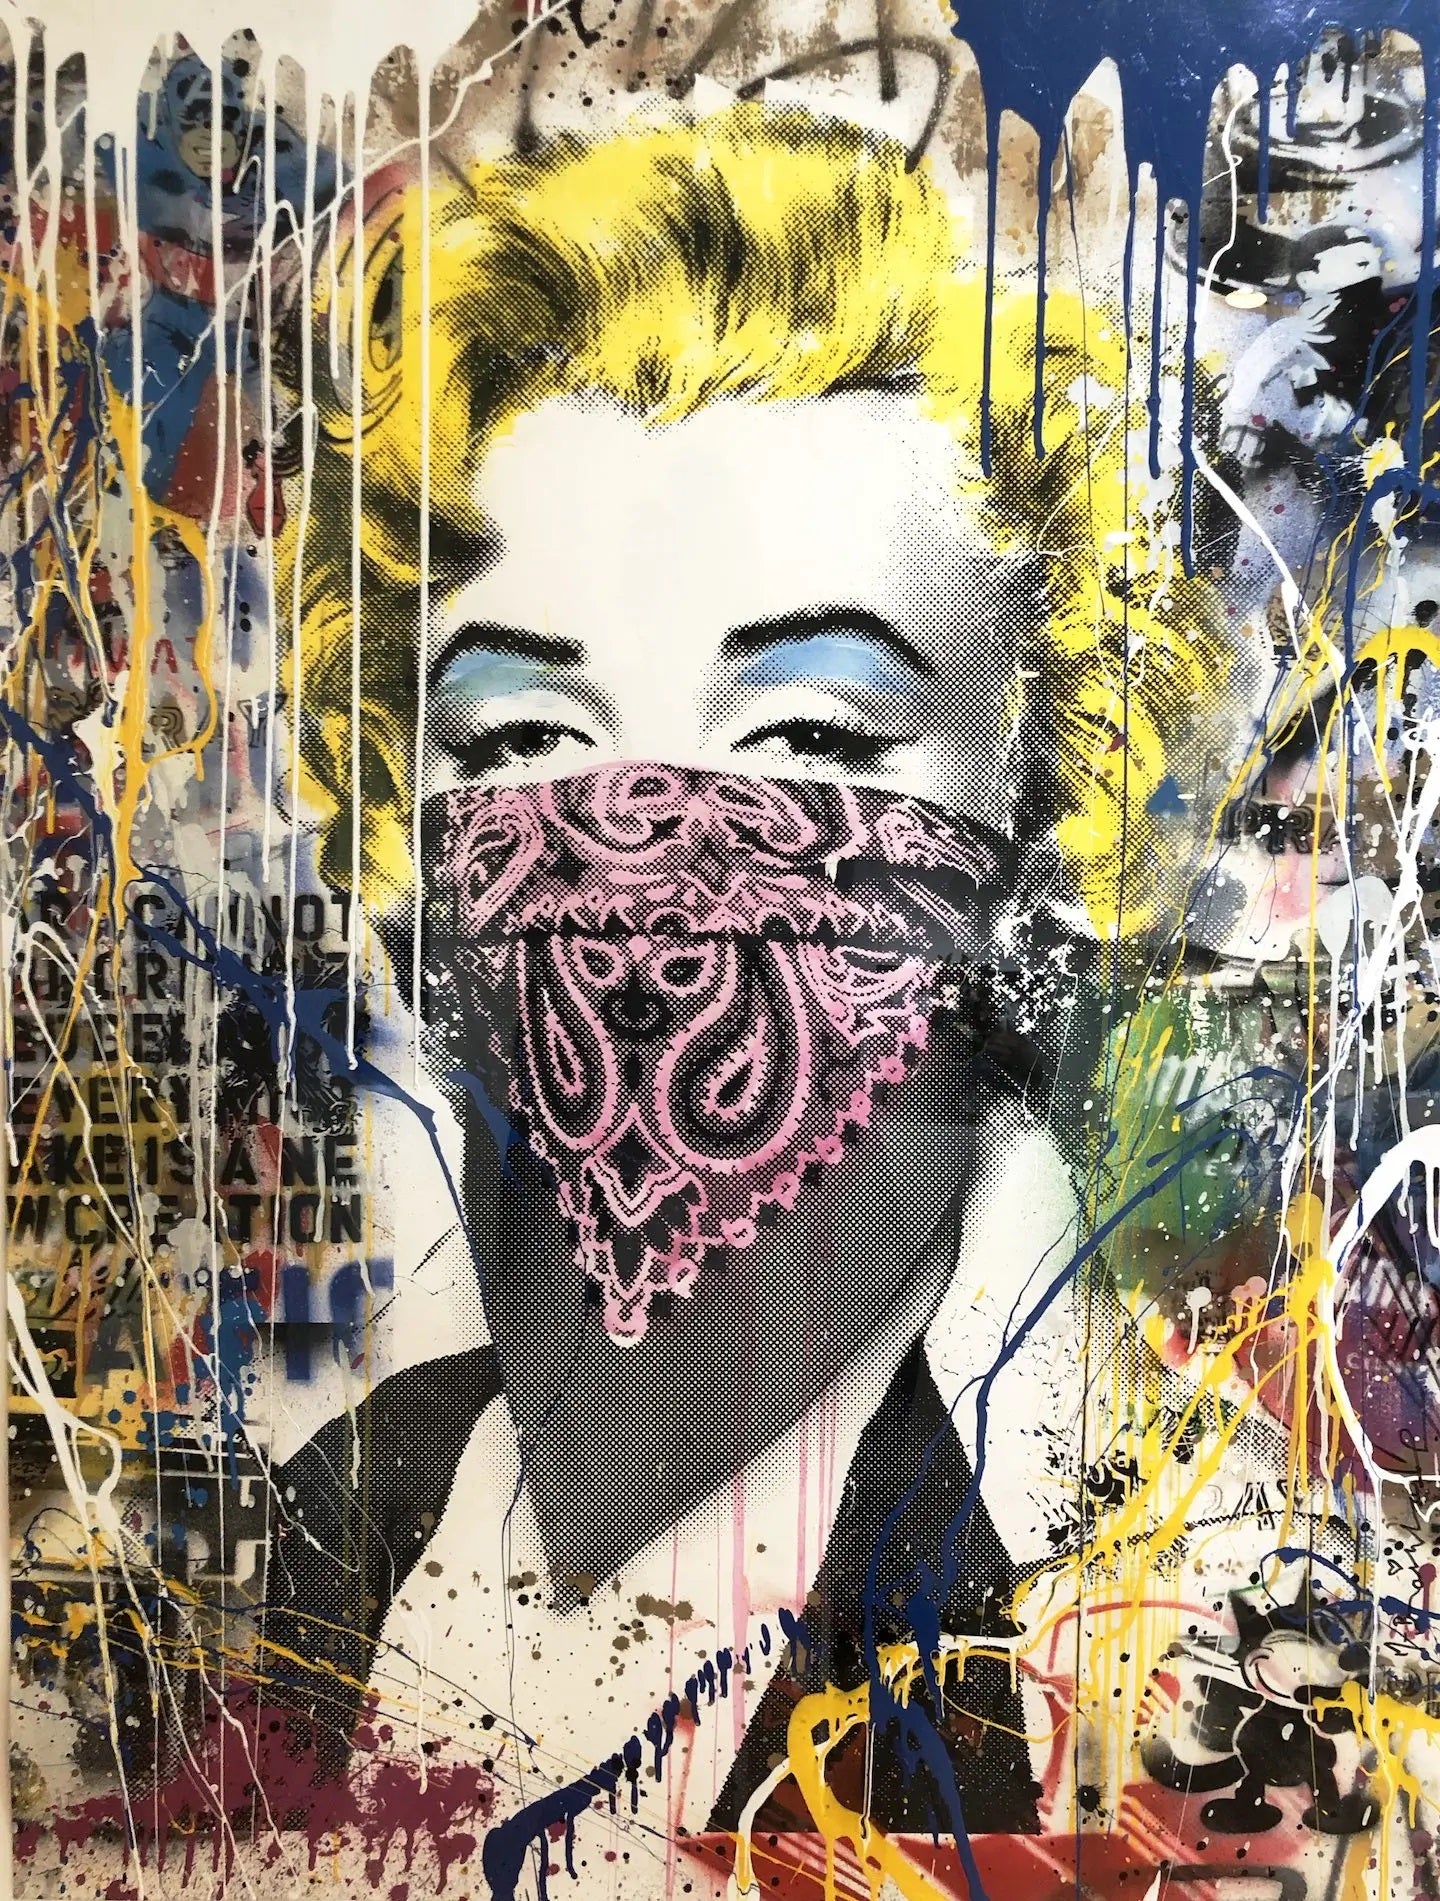 x588 XXL Leinwandbilder Banksy Street Art Bandana Marilyn Monroe Handgemalt Warhol Pop Art  - MEGA XXXL 160X90 CM Leinwandbilder inkl. Holzrahmen